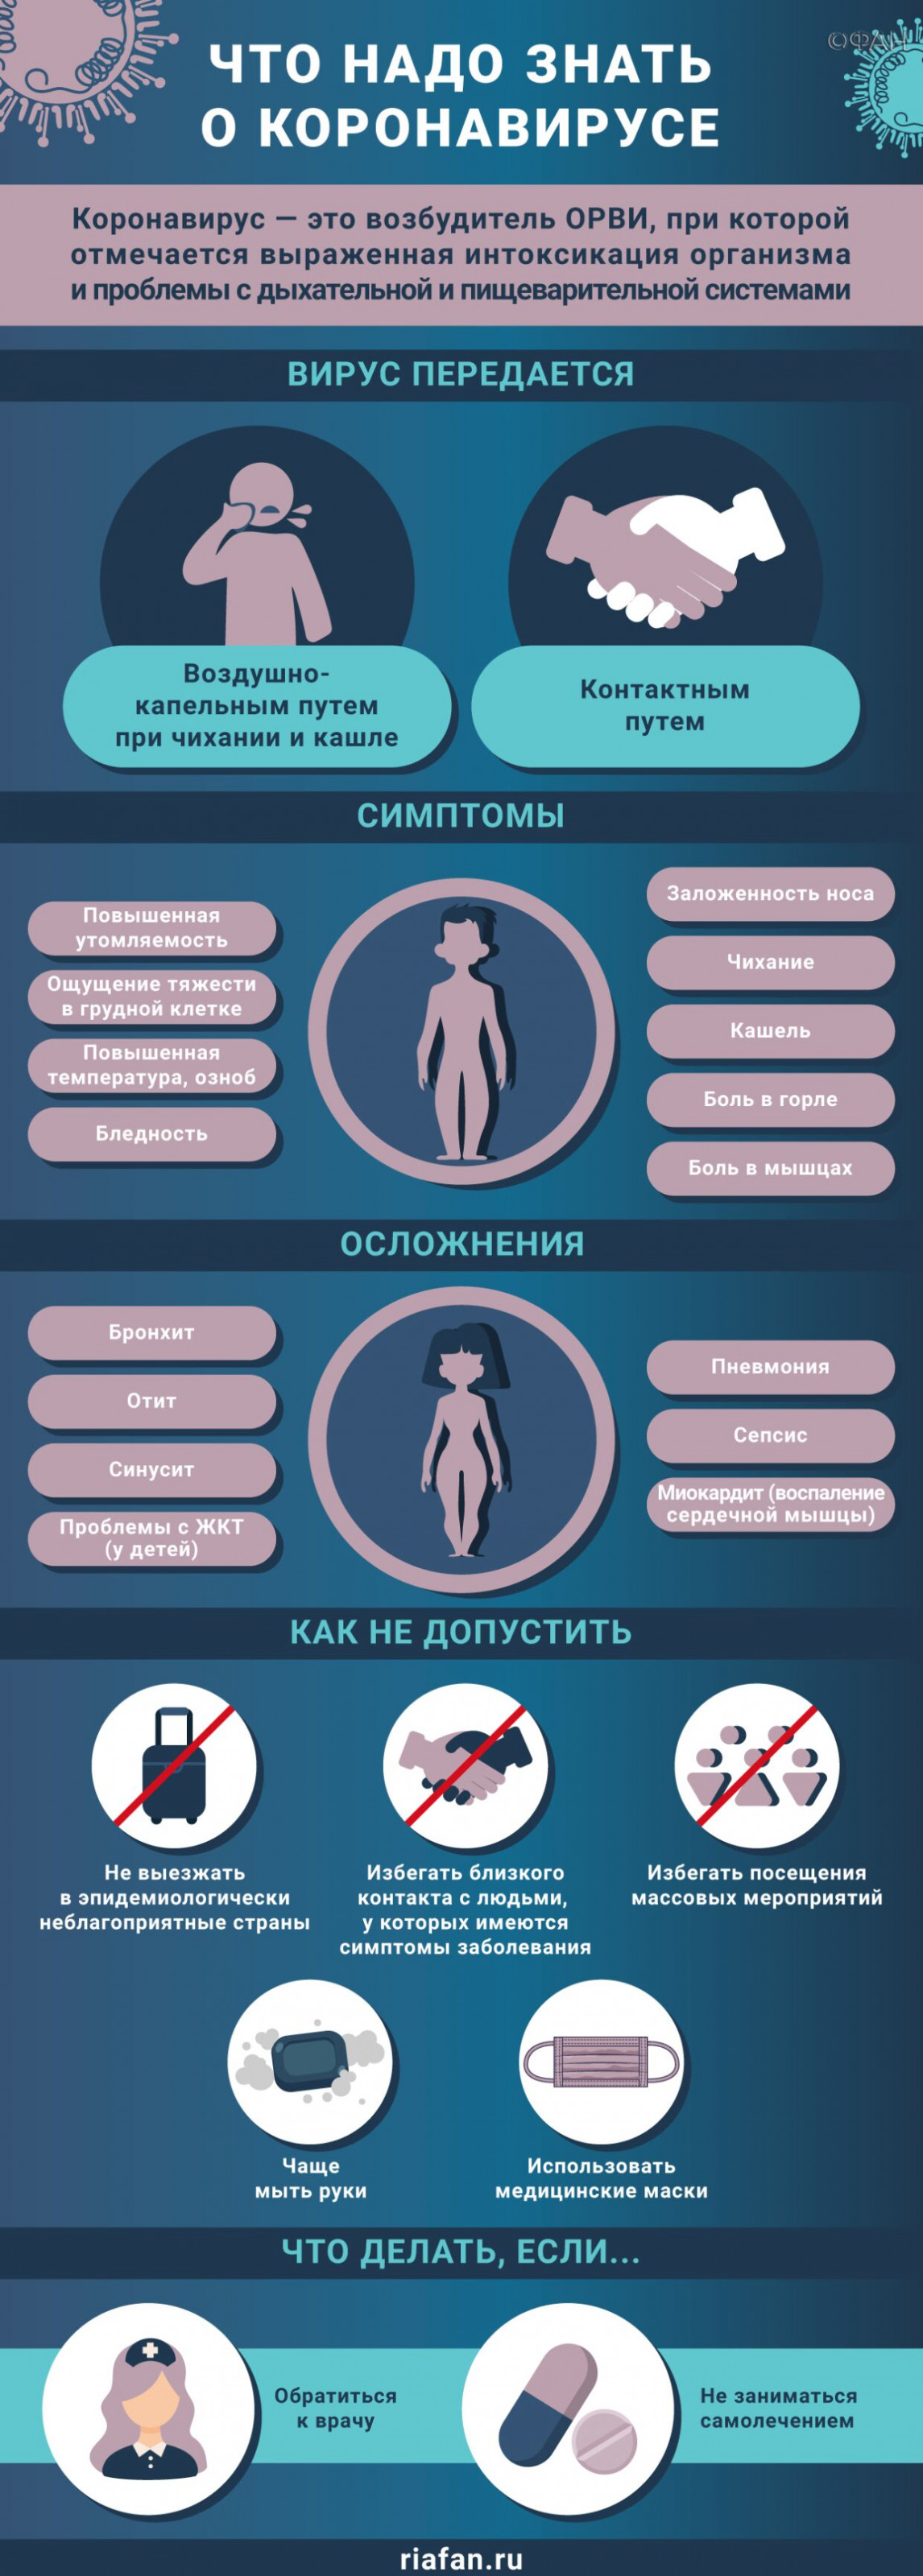 Медики за сутки выявили 238 новых случаев коронавируса в Петербурге